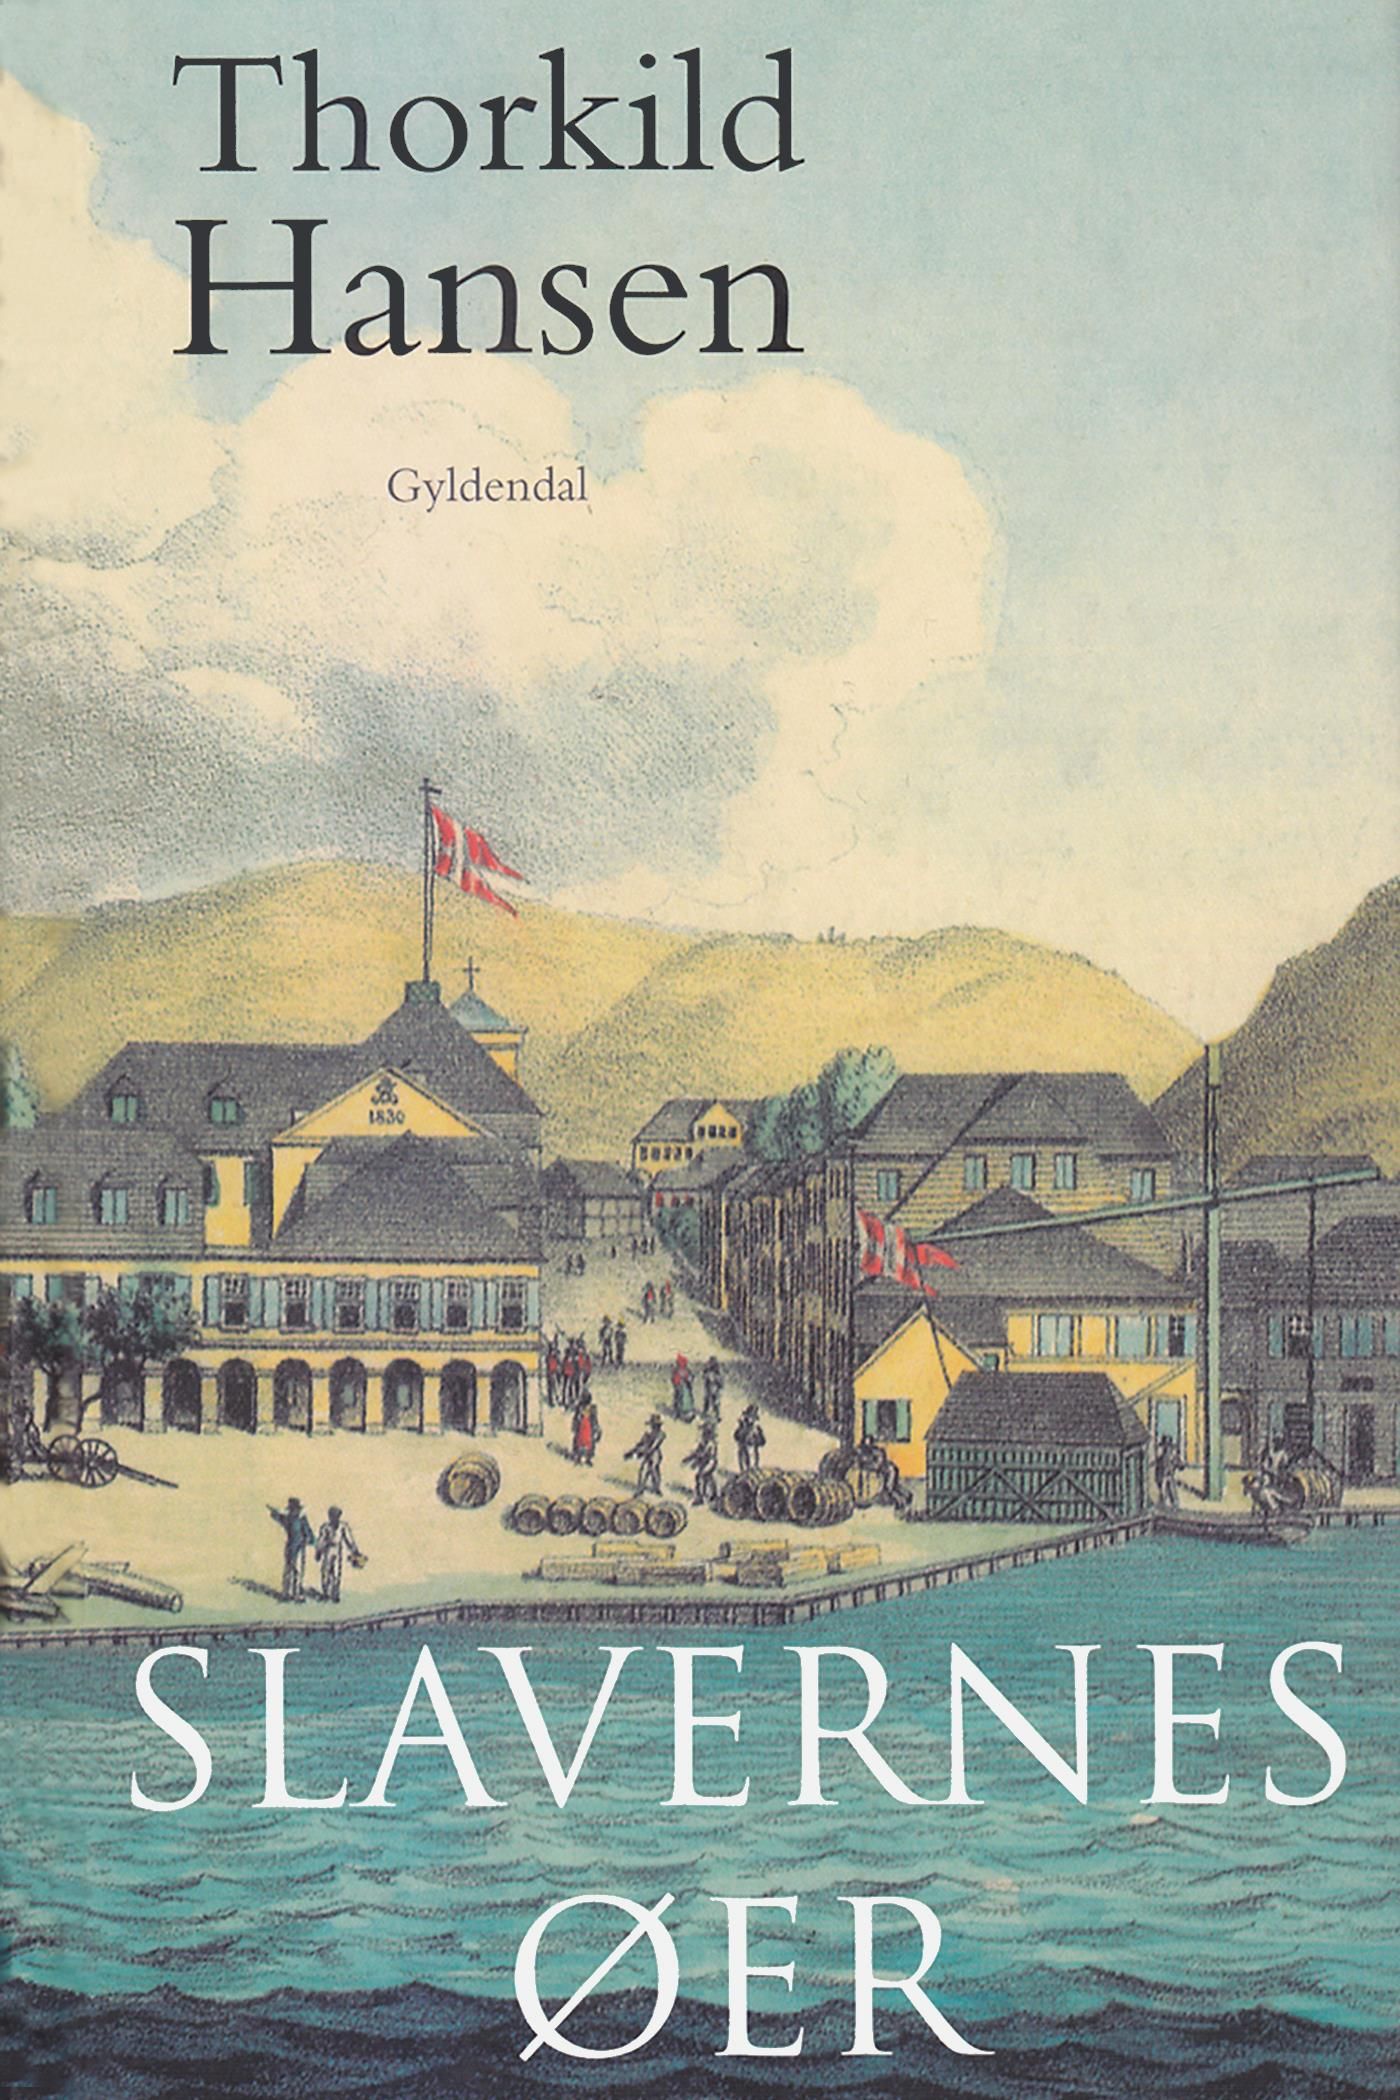 Slavernes øer, eBook by Thorkild Hansen